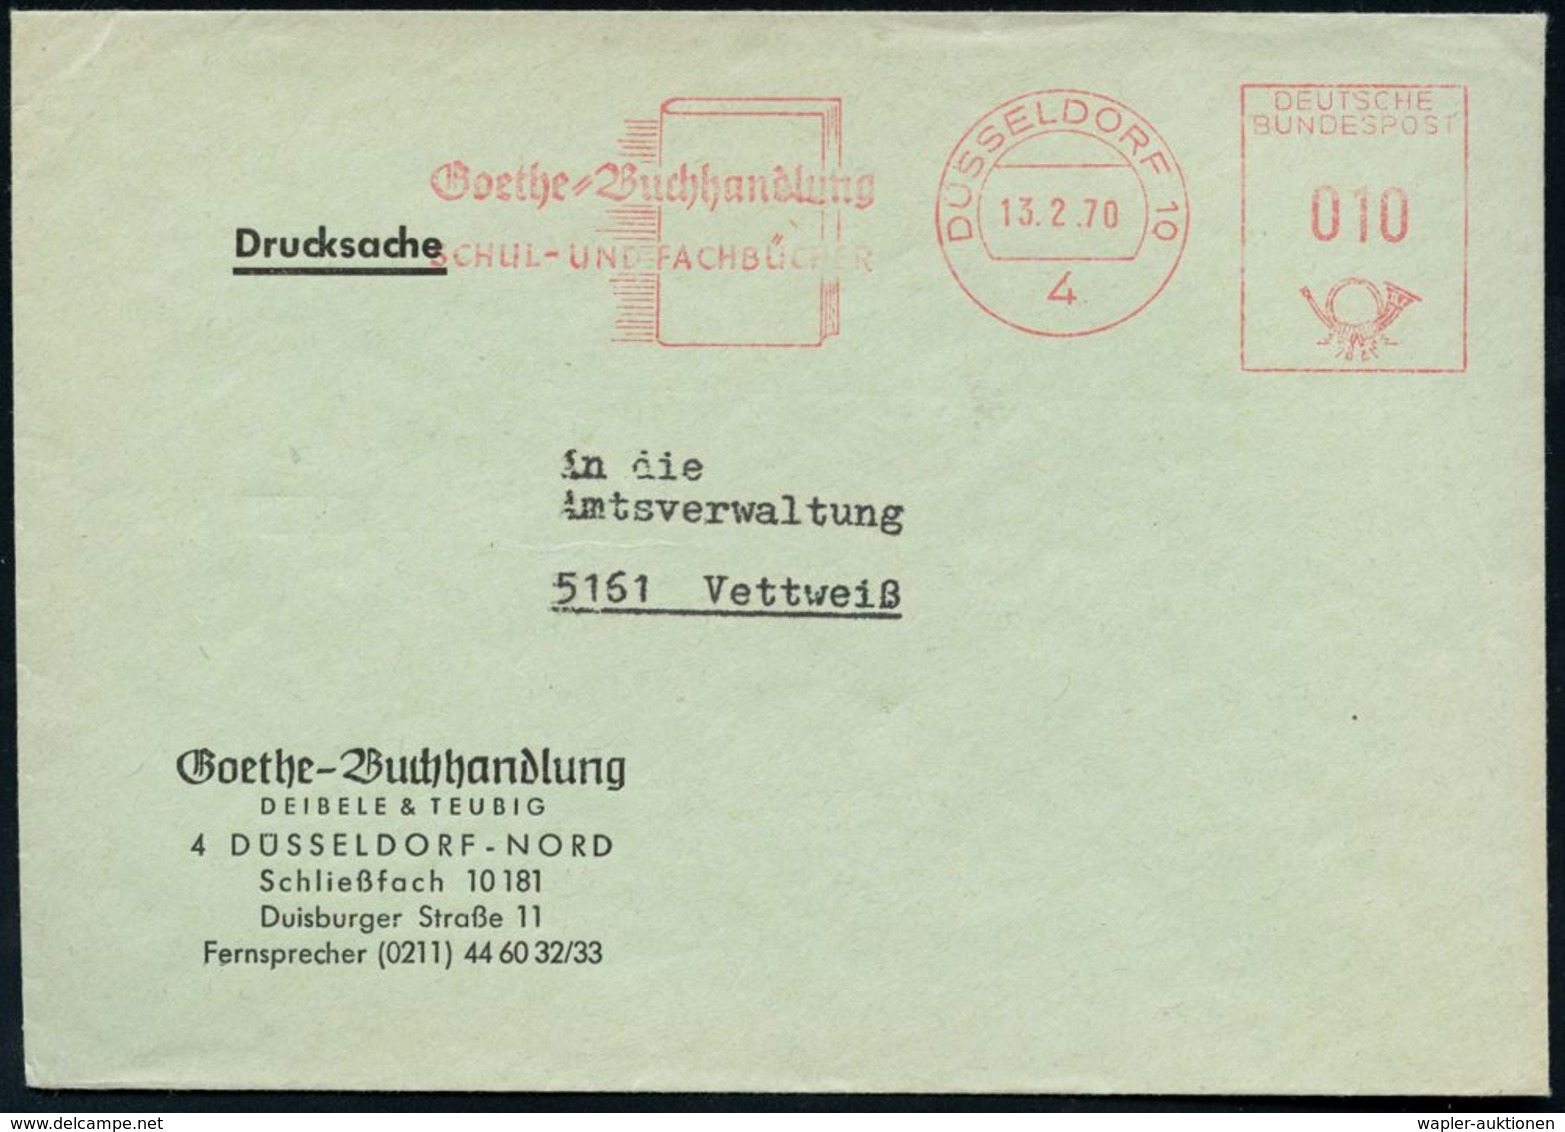 4 DÜSSELDORF 10/ Goethe-Buchhandlung.. 1970 AFS (Buch) Auf Firmen-Bf: G O E T H E - Buchhandlung Deibele & Teubig (Dü.E- - Scrittori